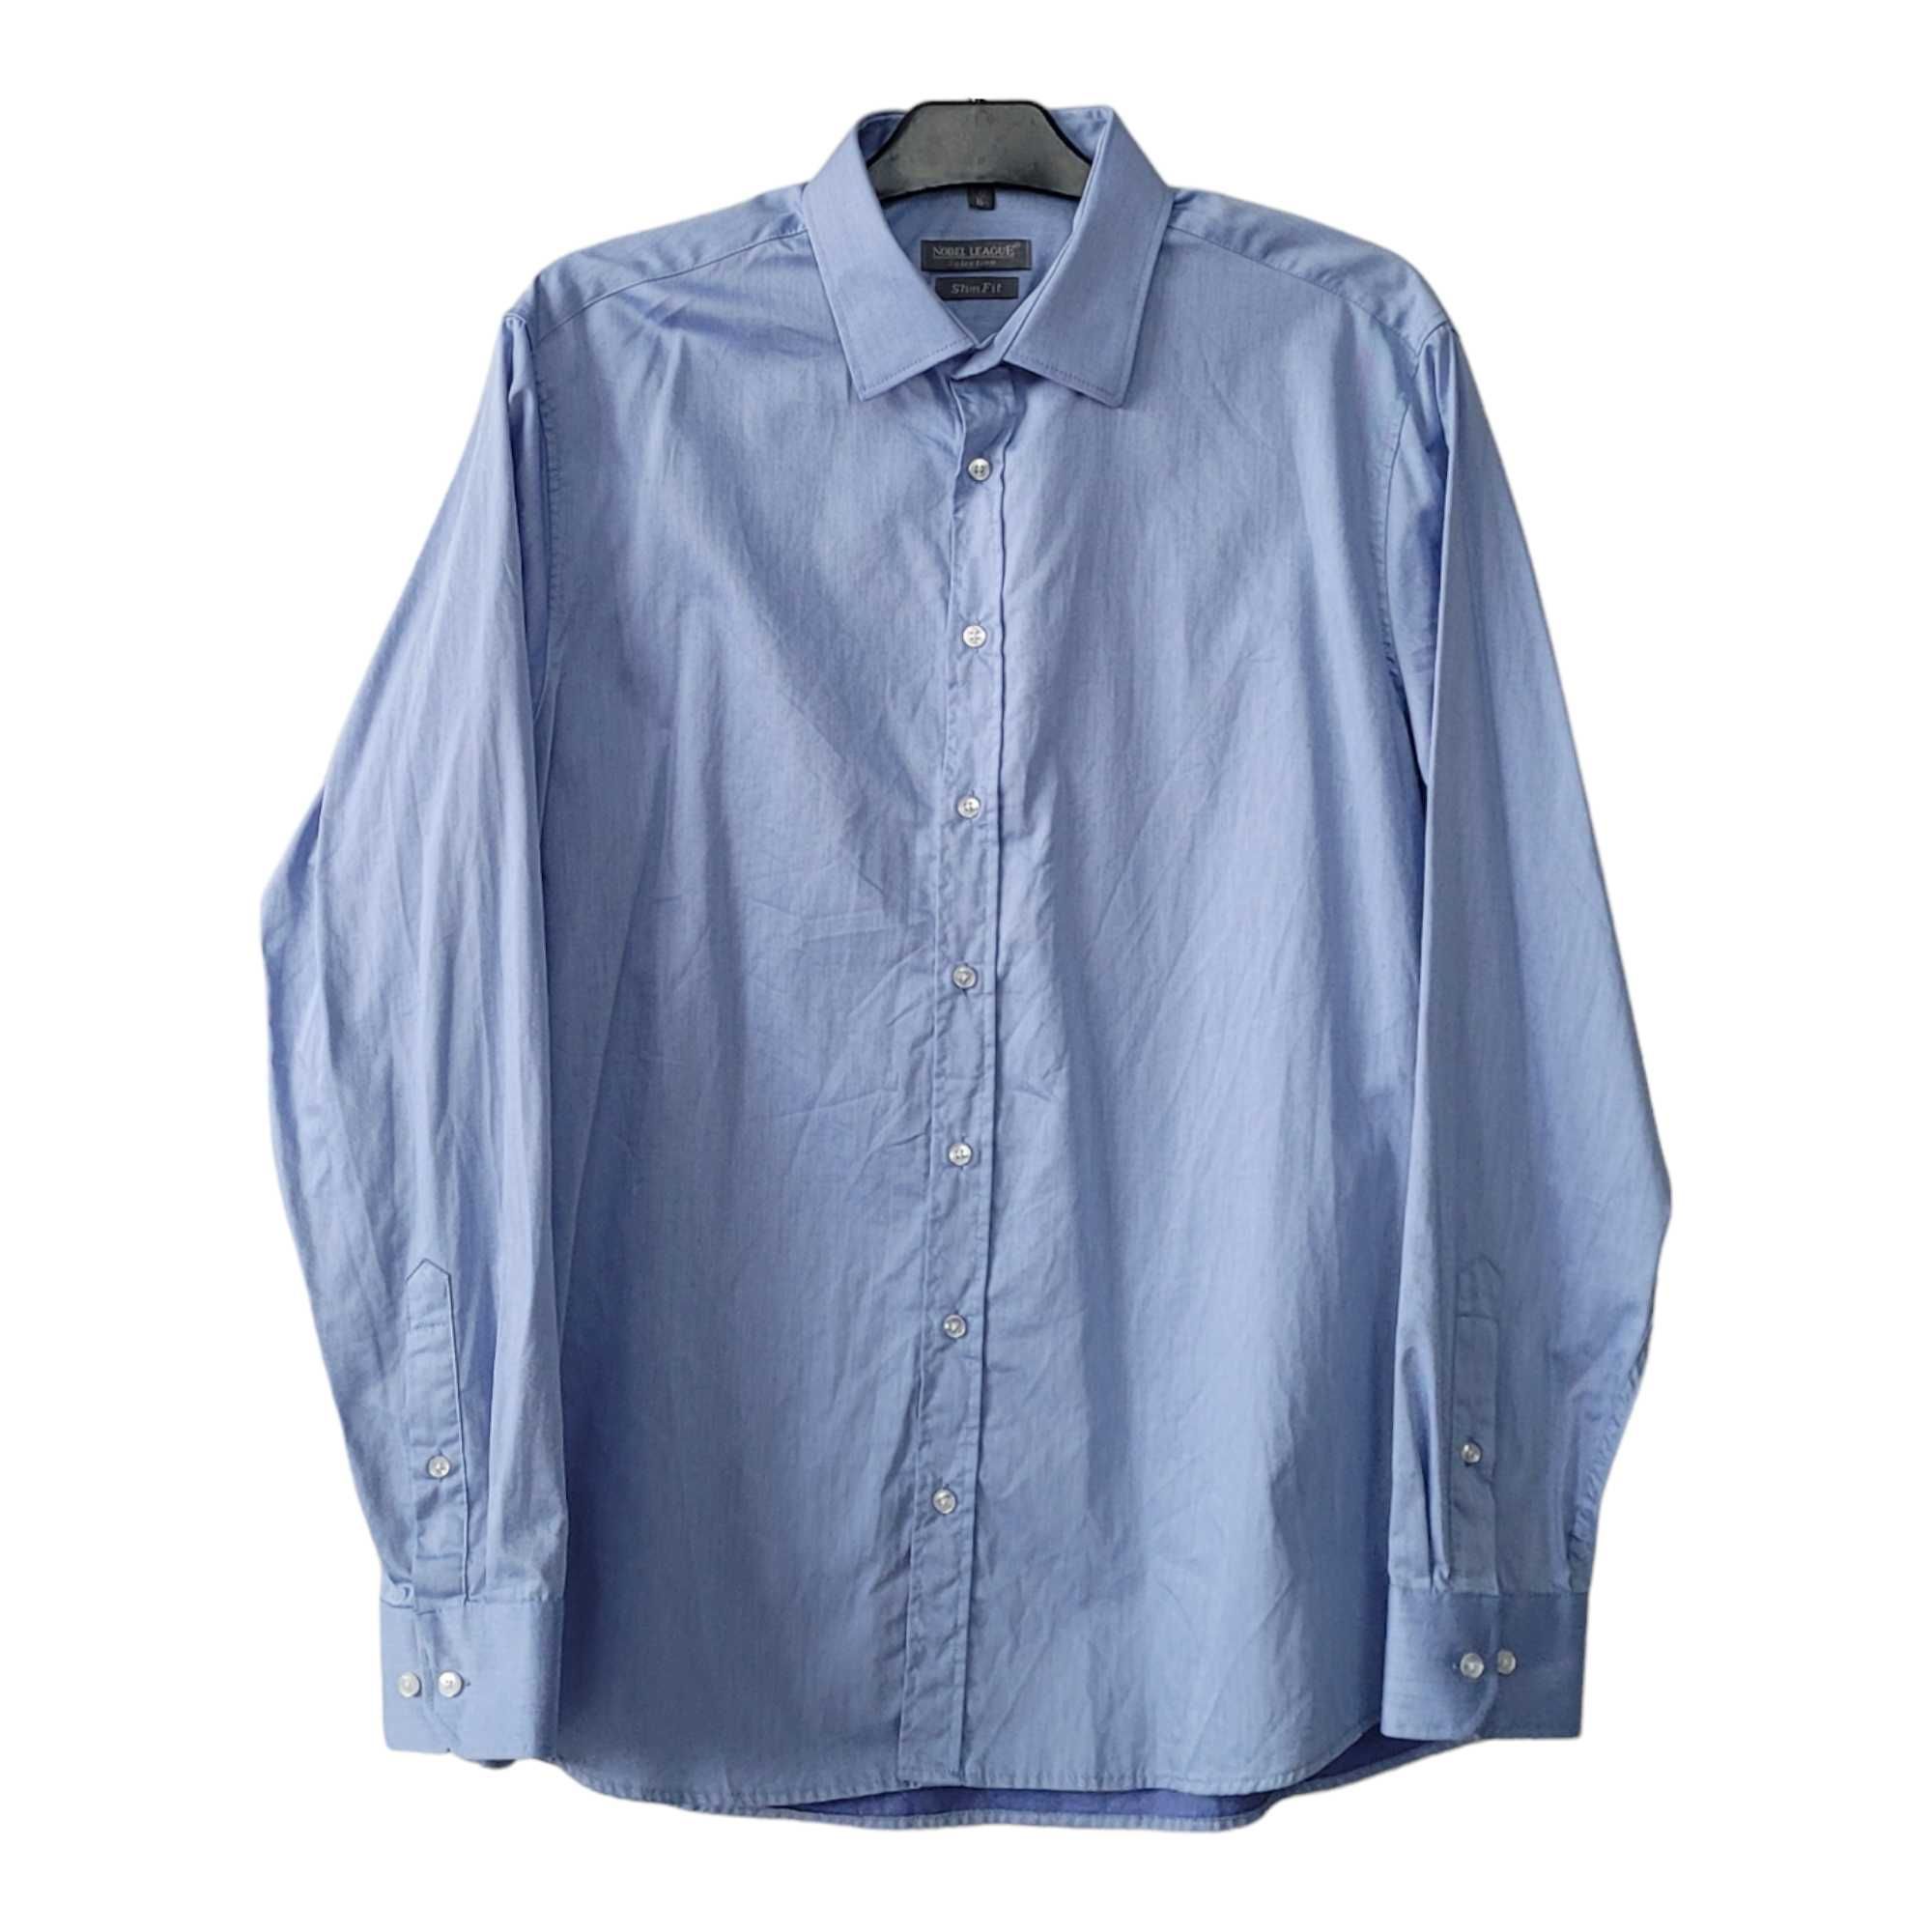 Niebieska koszula męska długi rękaw elegancka XL 42 slim fit bawełna